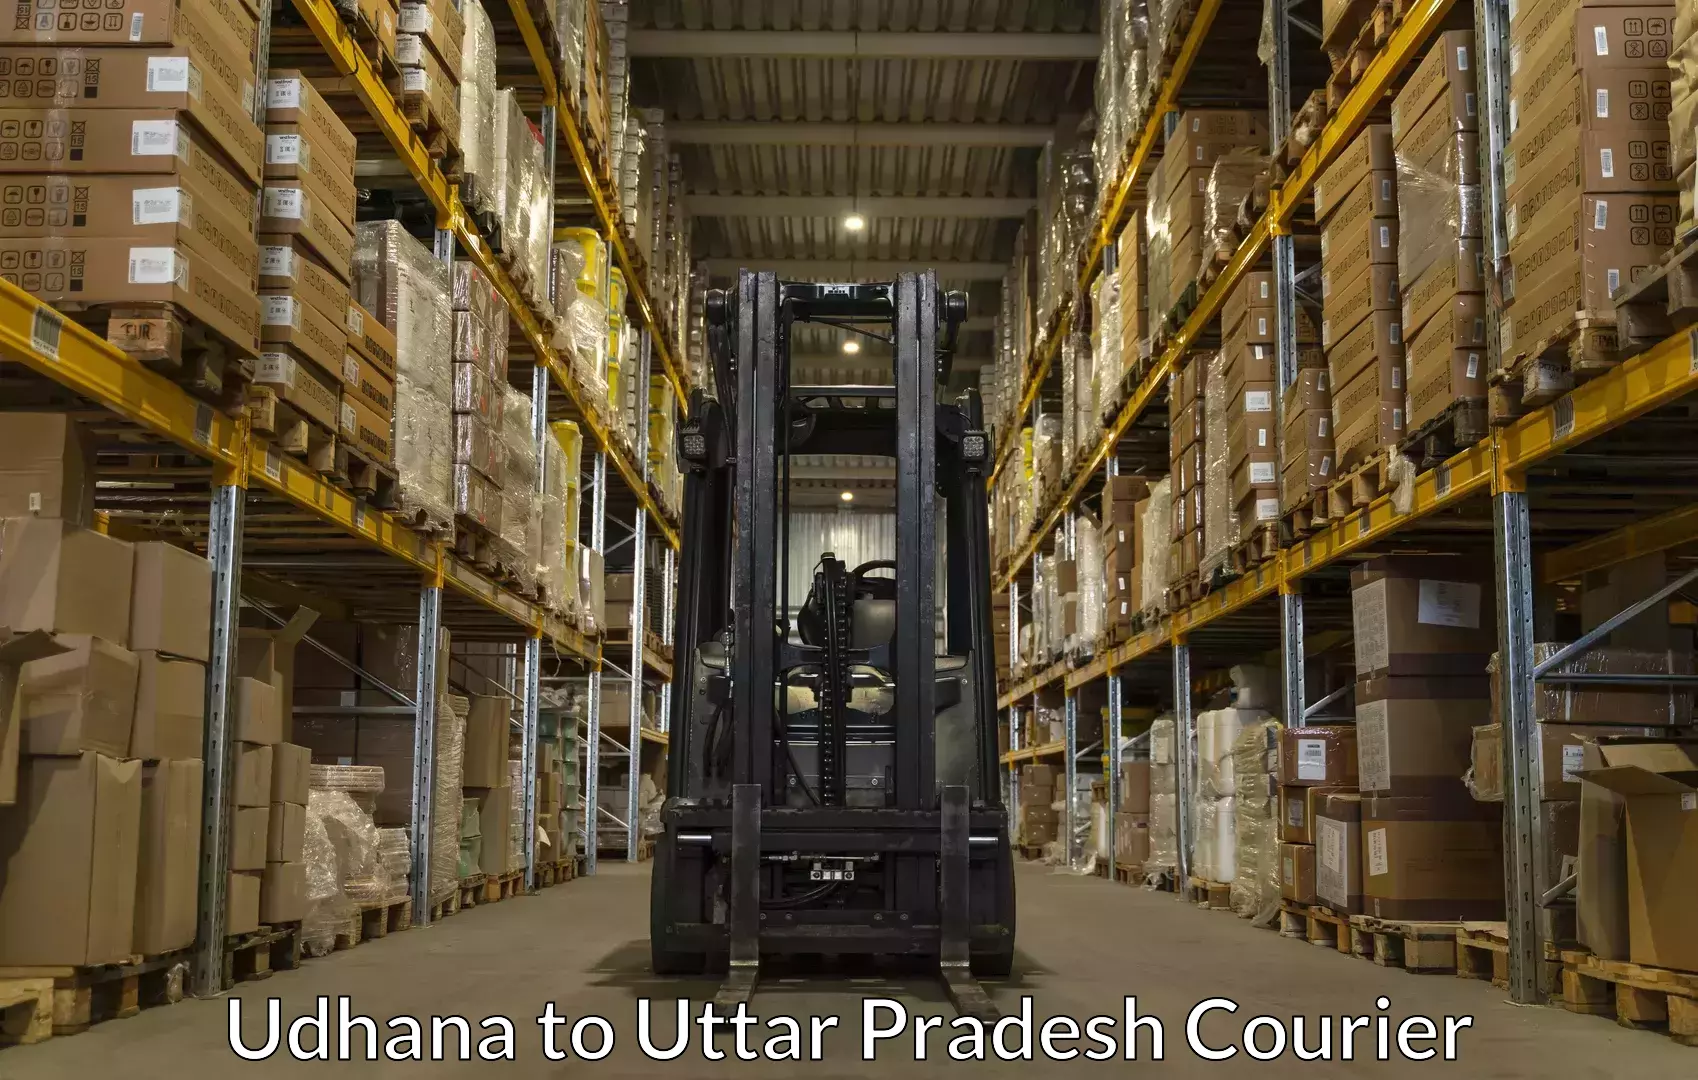 Automated luggage transport Udhana to Kanth